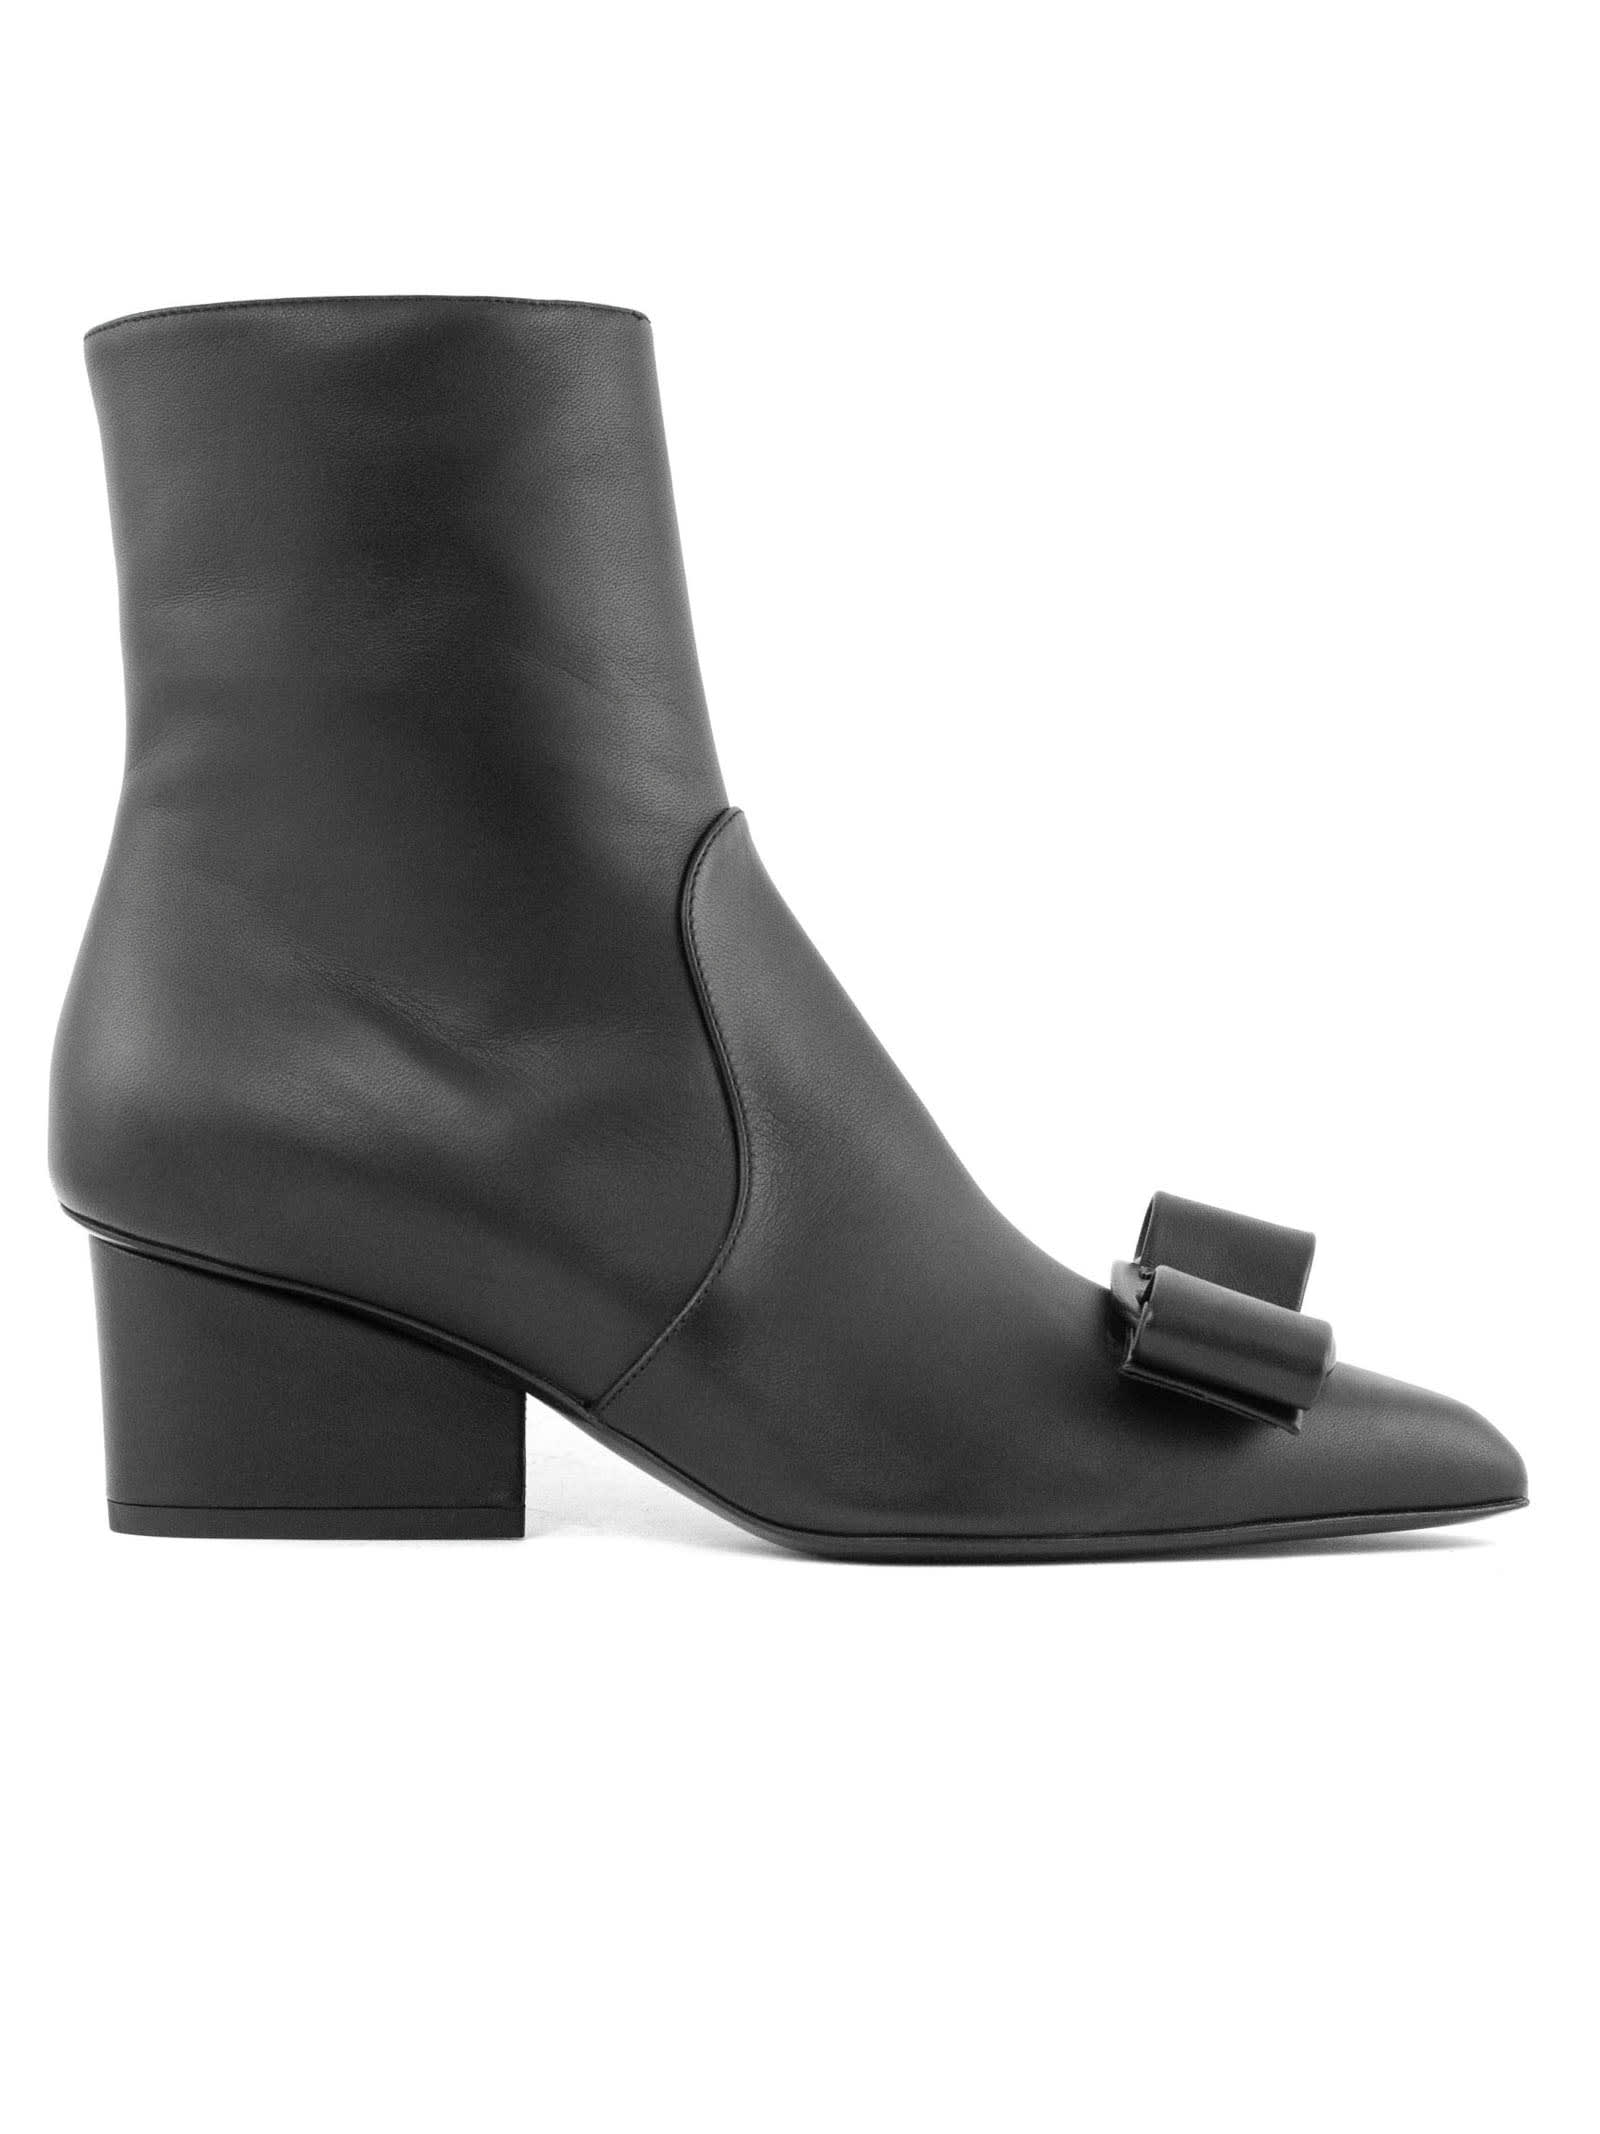 Salvatore Ferragamo Black Nappa Leather Ankle Boots